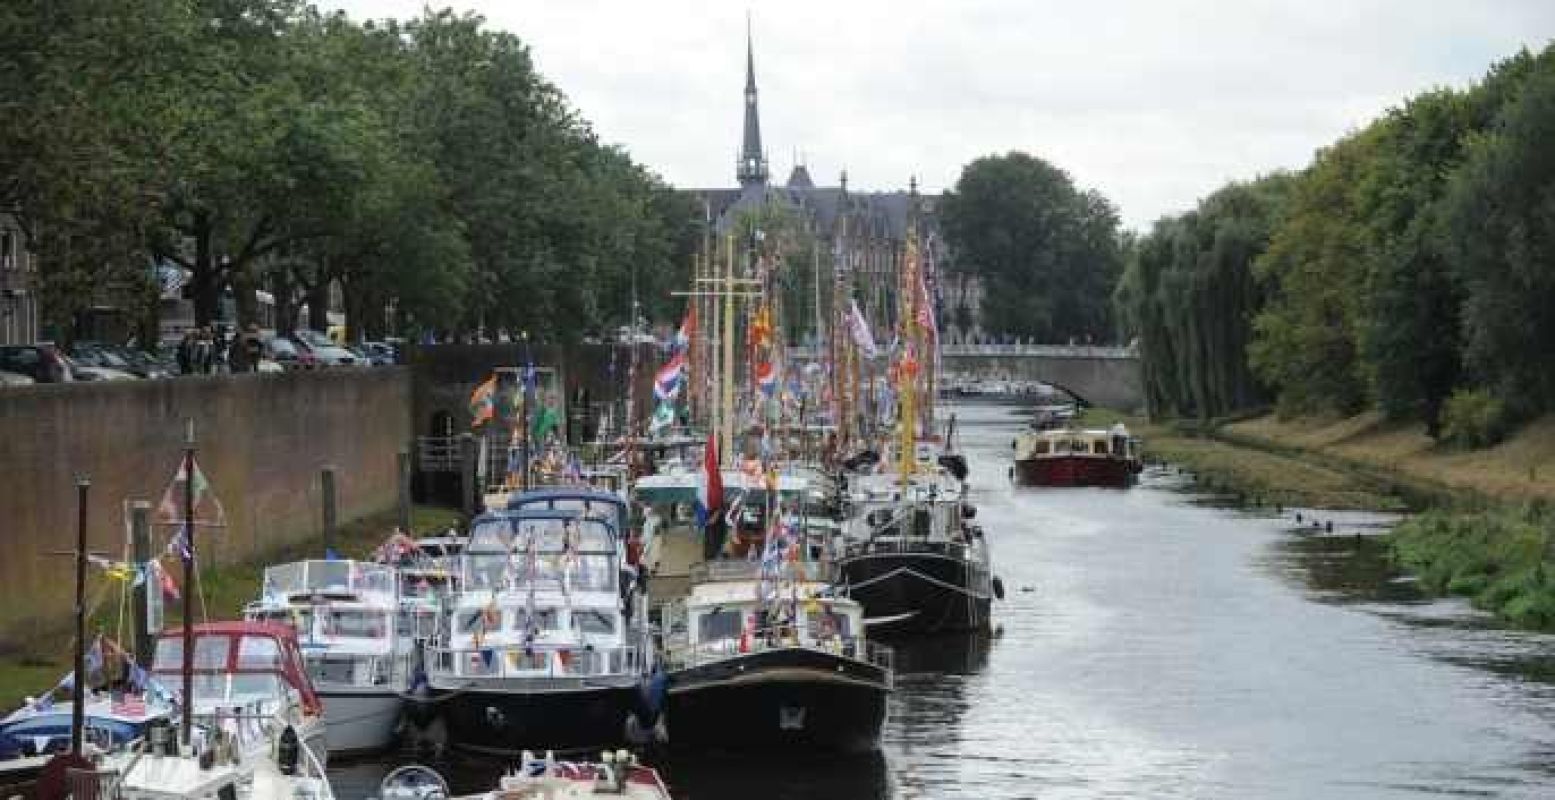 De mooiste historische schepen zie je dit weekend in 's-Hertogenbosch. Foto: Henk van Esch